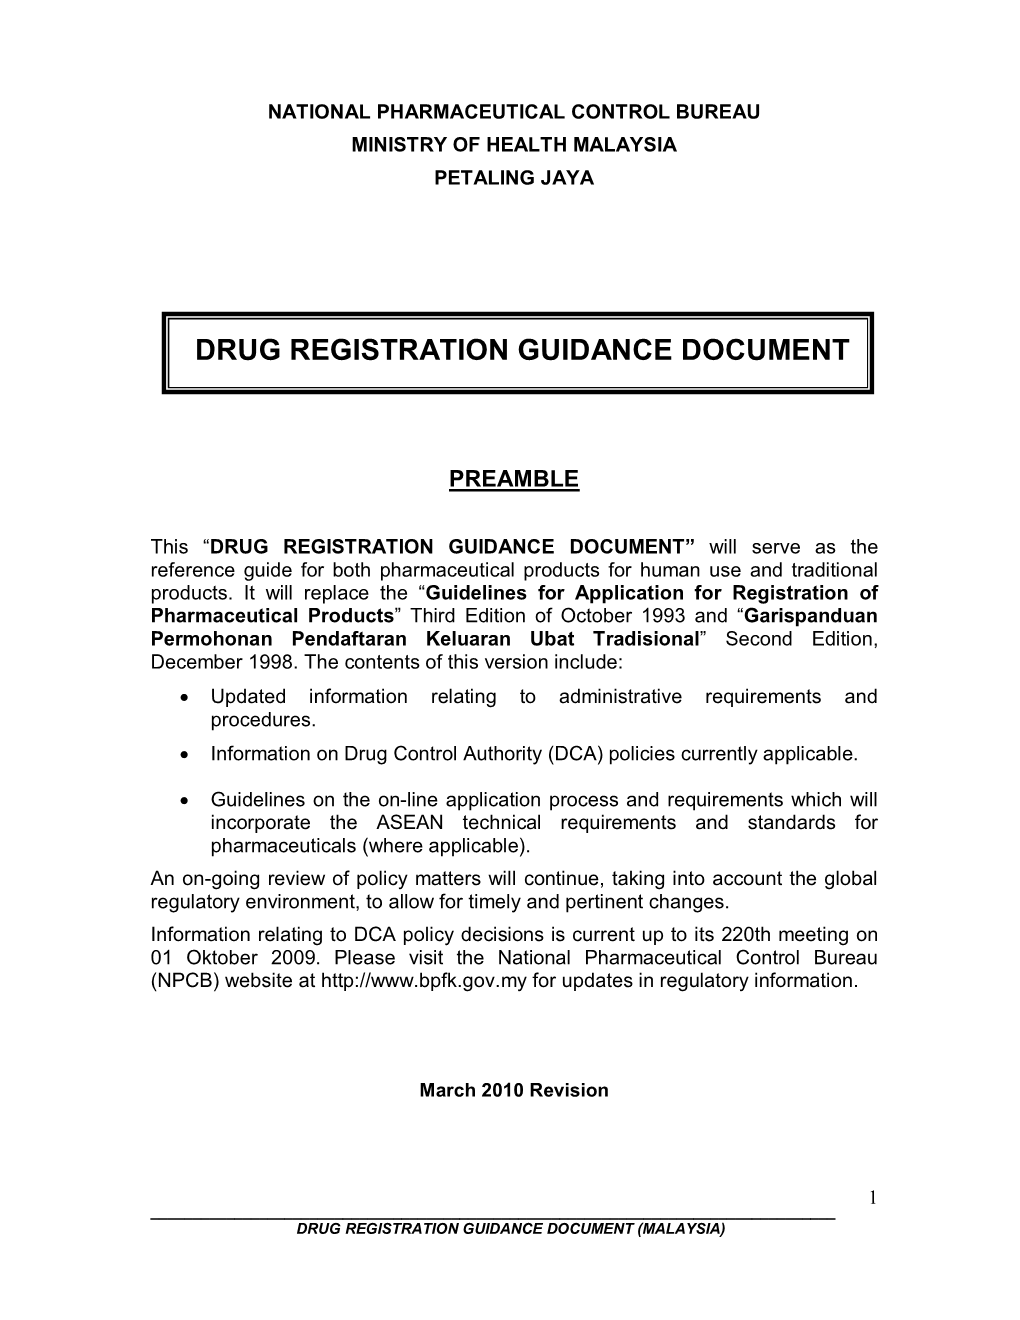 Drug Registration Guidance Document